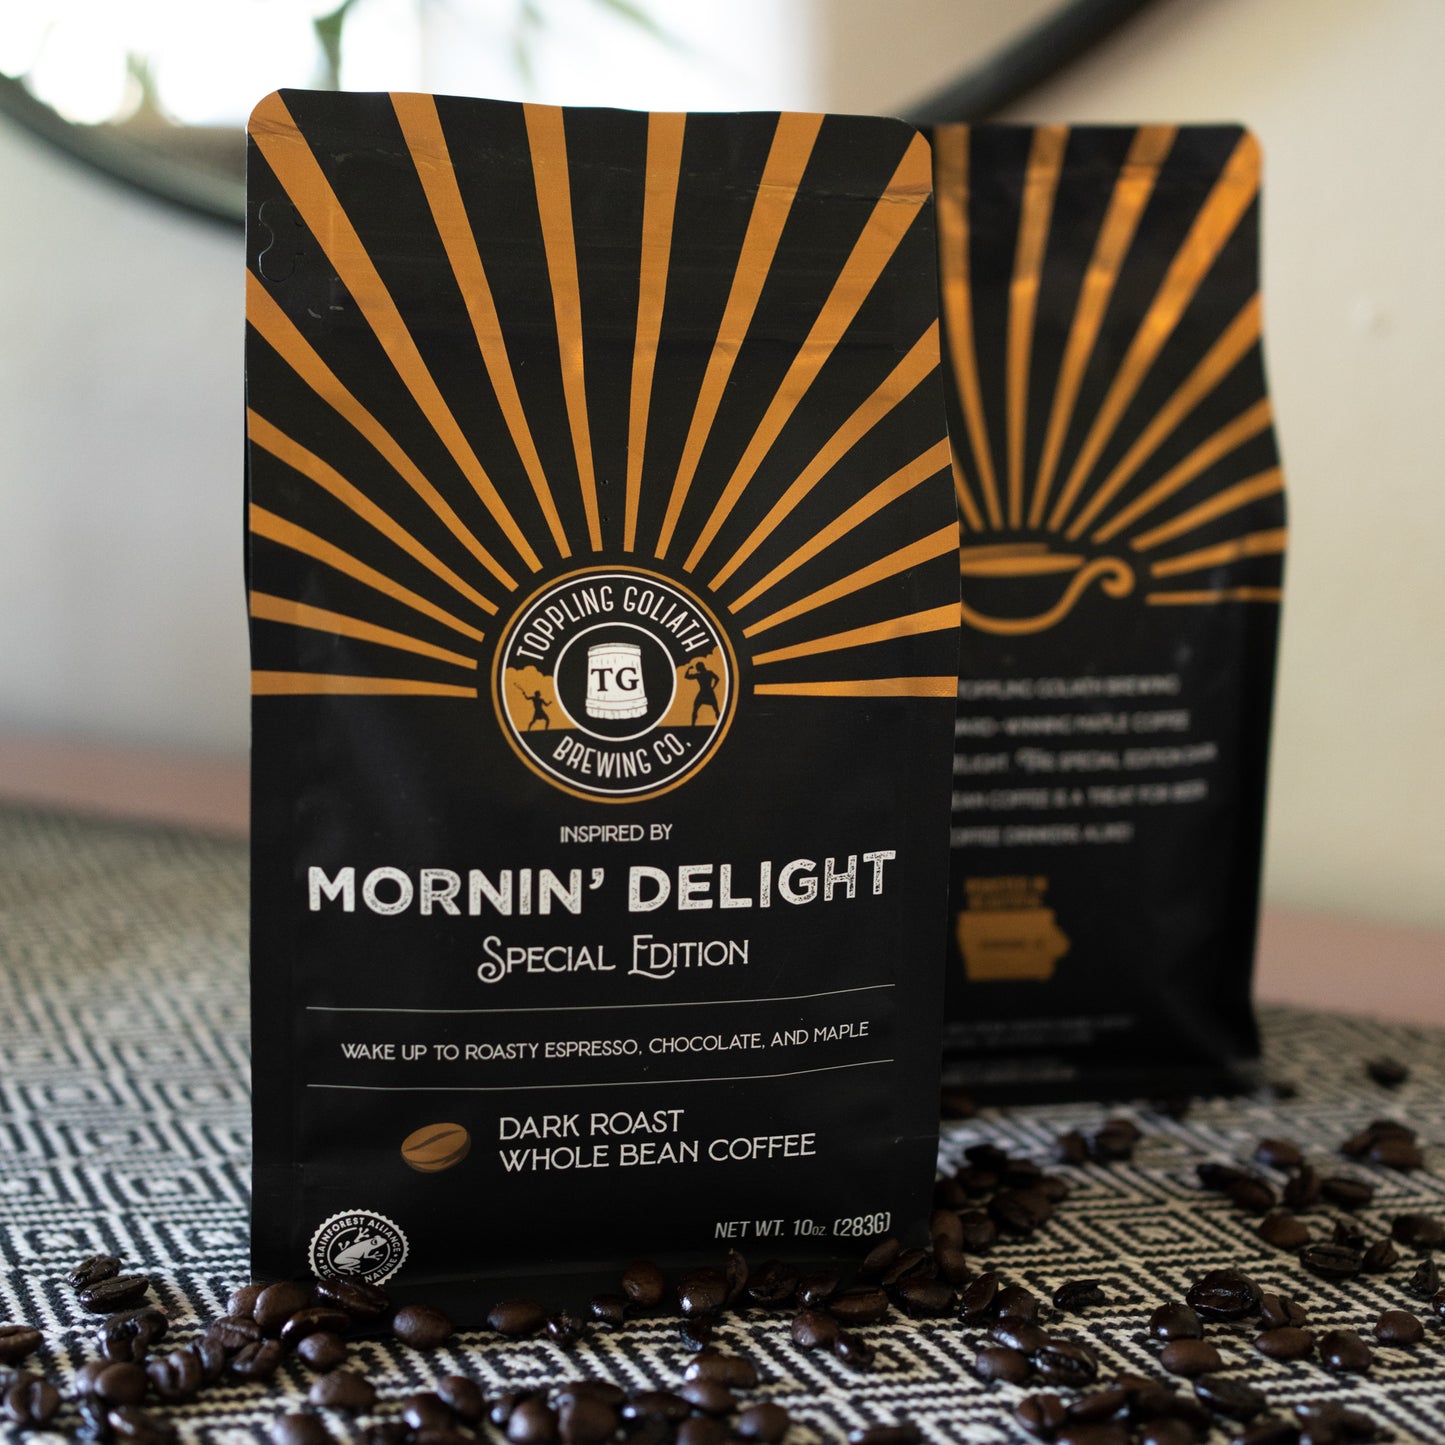 TG Coffee-Mornin' Delight-Whole Bean